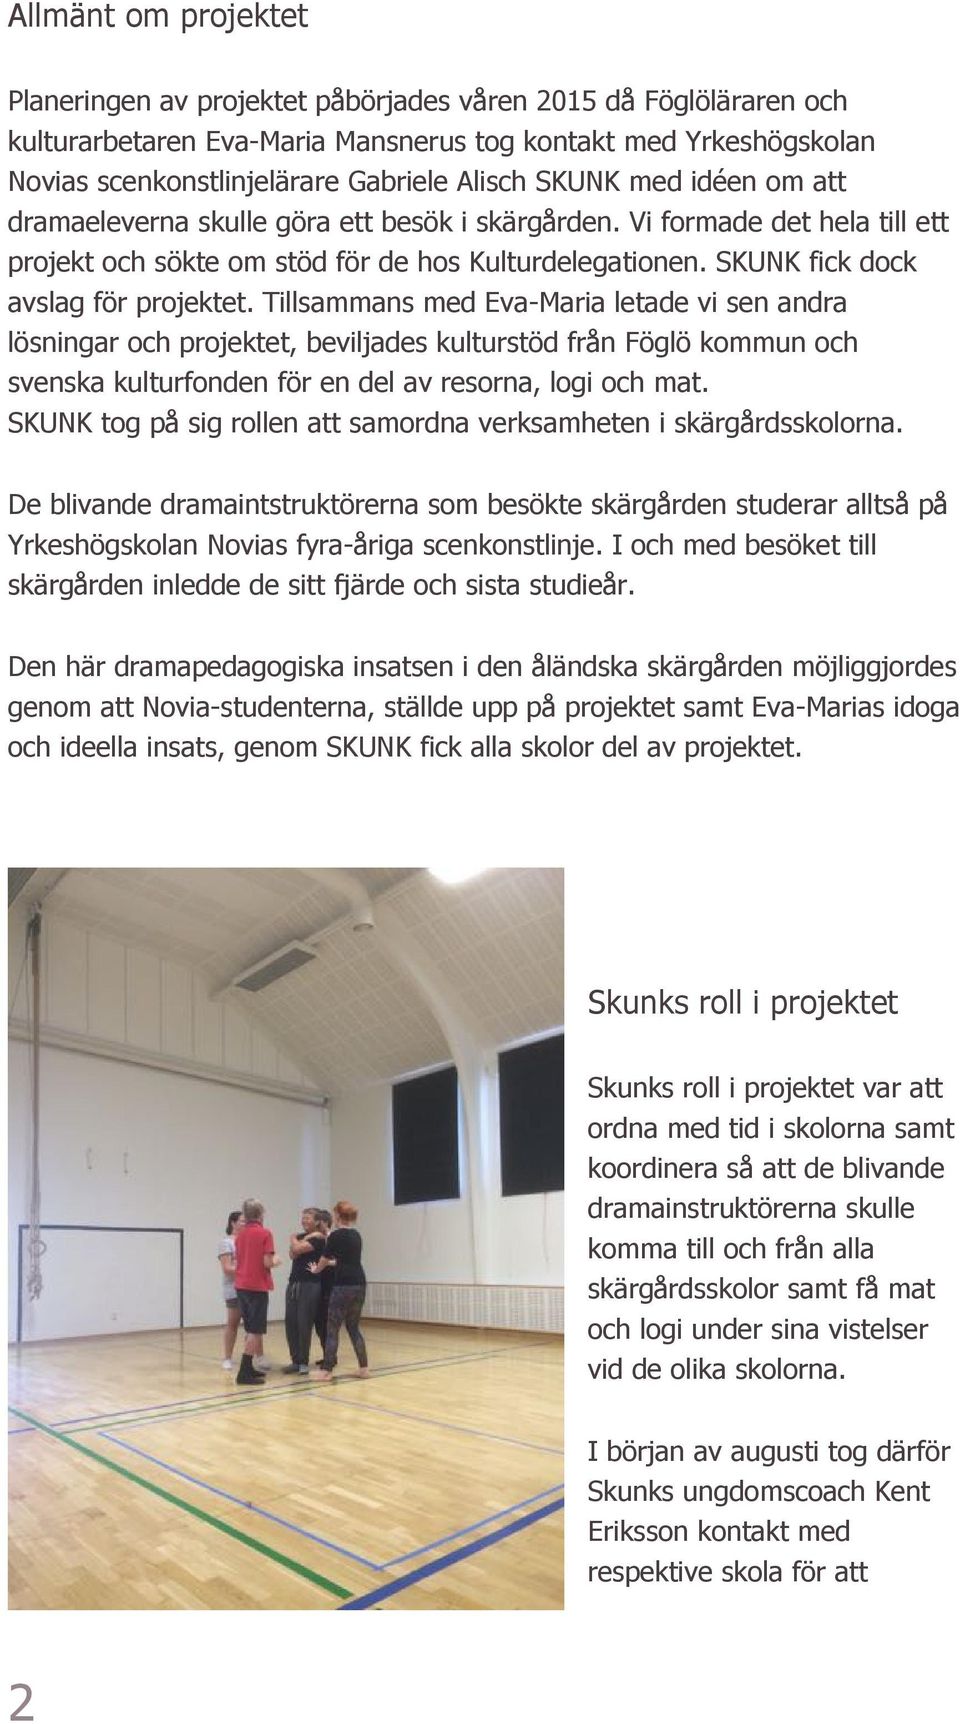 Tillsammans med Eva-Maria letade vi sen andra lösningar och projektet, beviljades kulturstöd från Föglö kommun och svenska kulturfonden för en del av resorna, logi och mat.